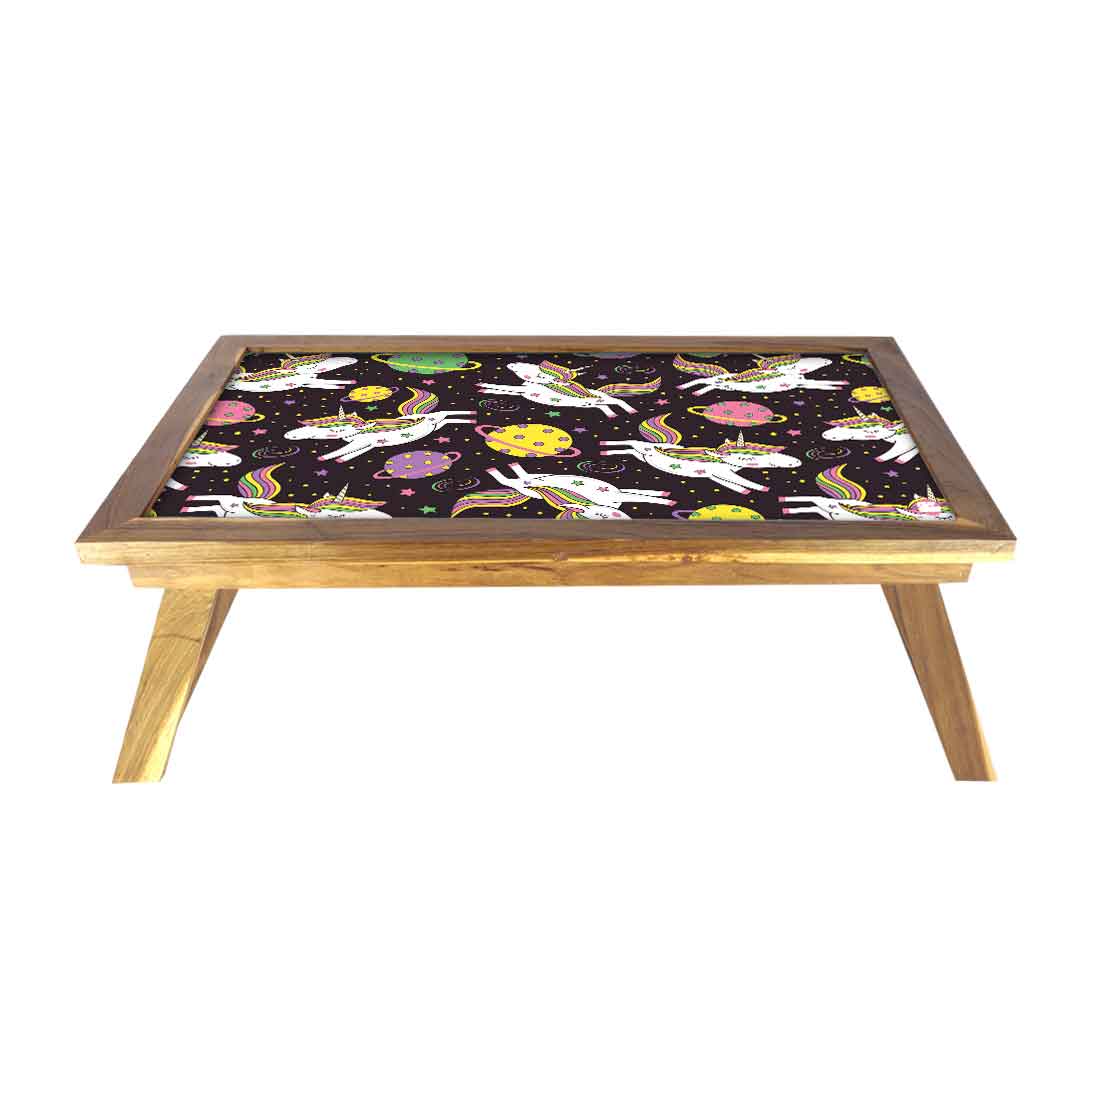 Folding Designer Wooden Breakfast Table for Children - Unicorn Space Nutcase